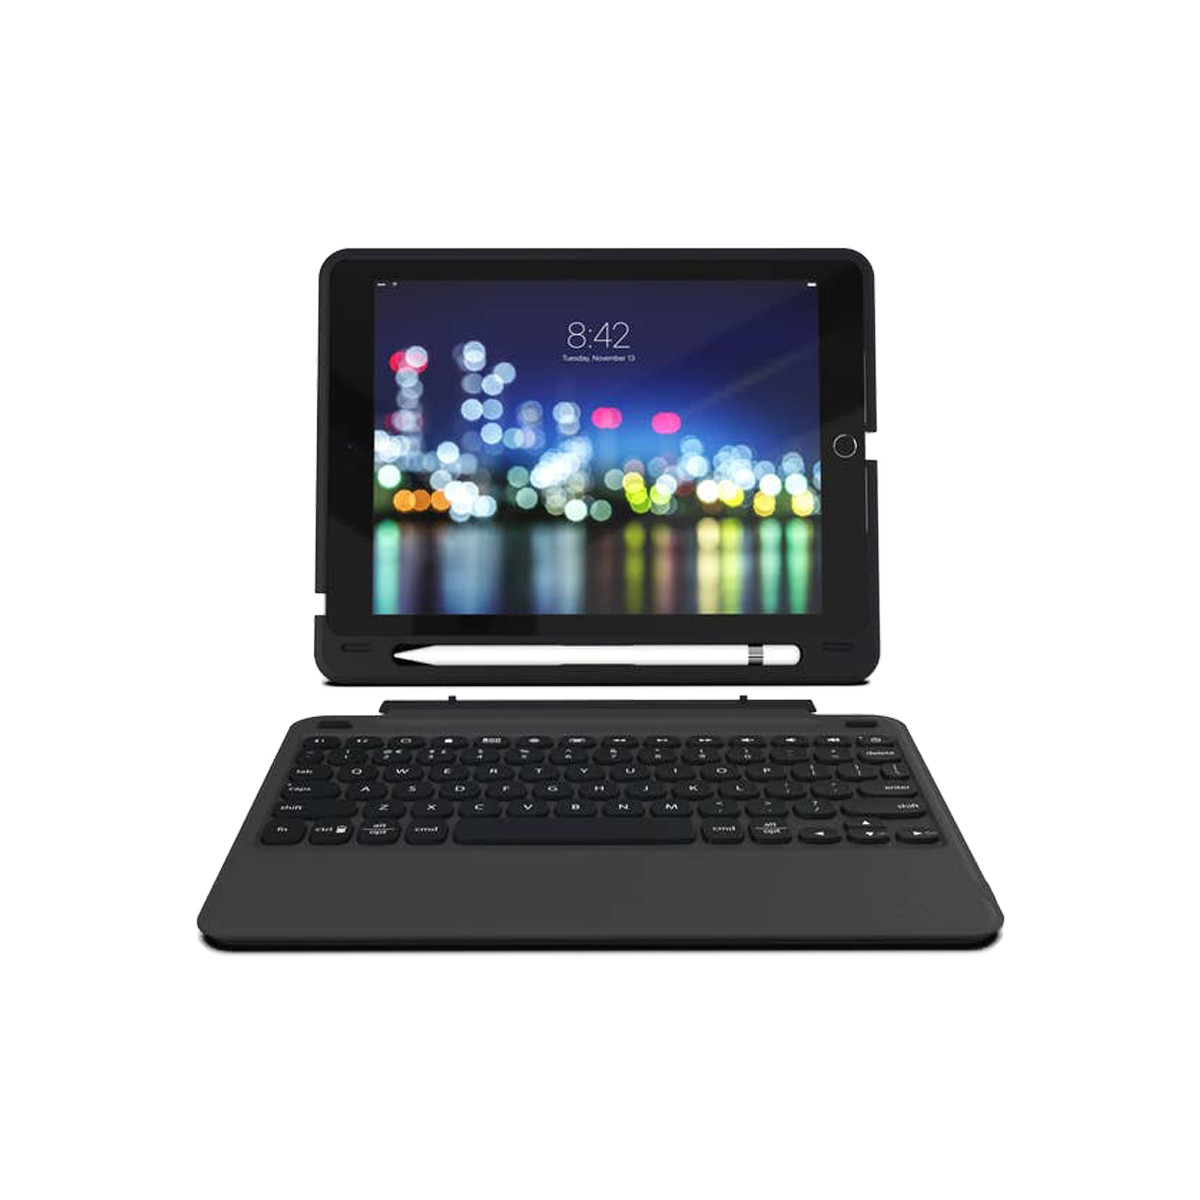 Ốp lưng kèm bàn phím ZAGG Keyboard Slim Book Go iPad 9.7 - 103302308 - Hàng chính hãng